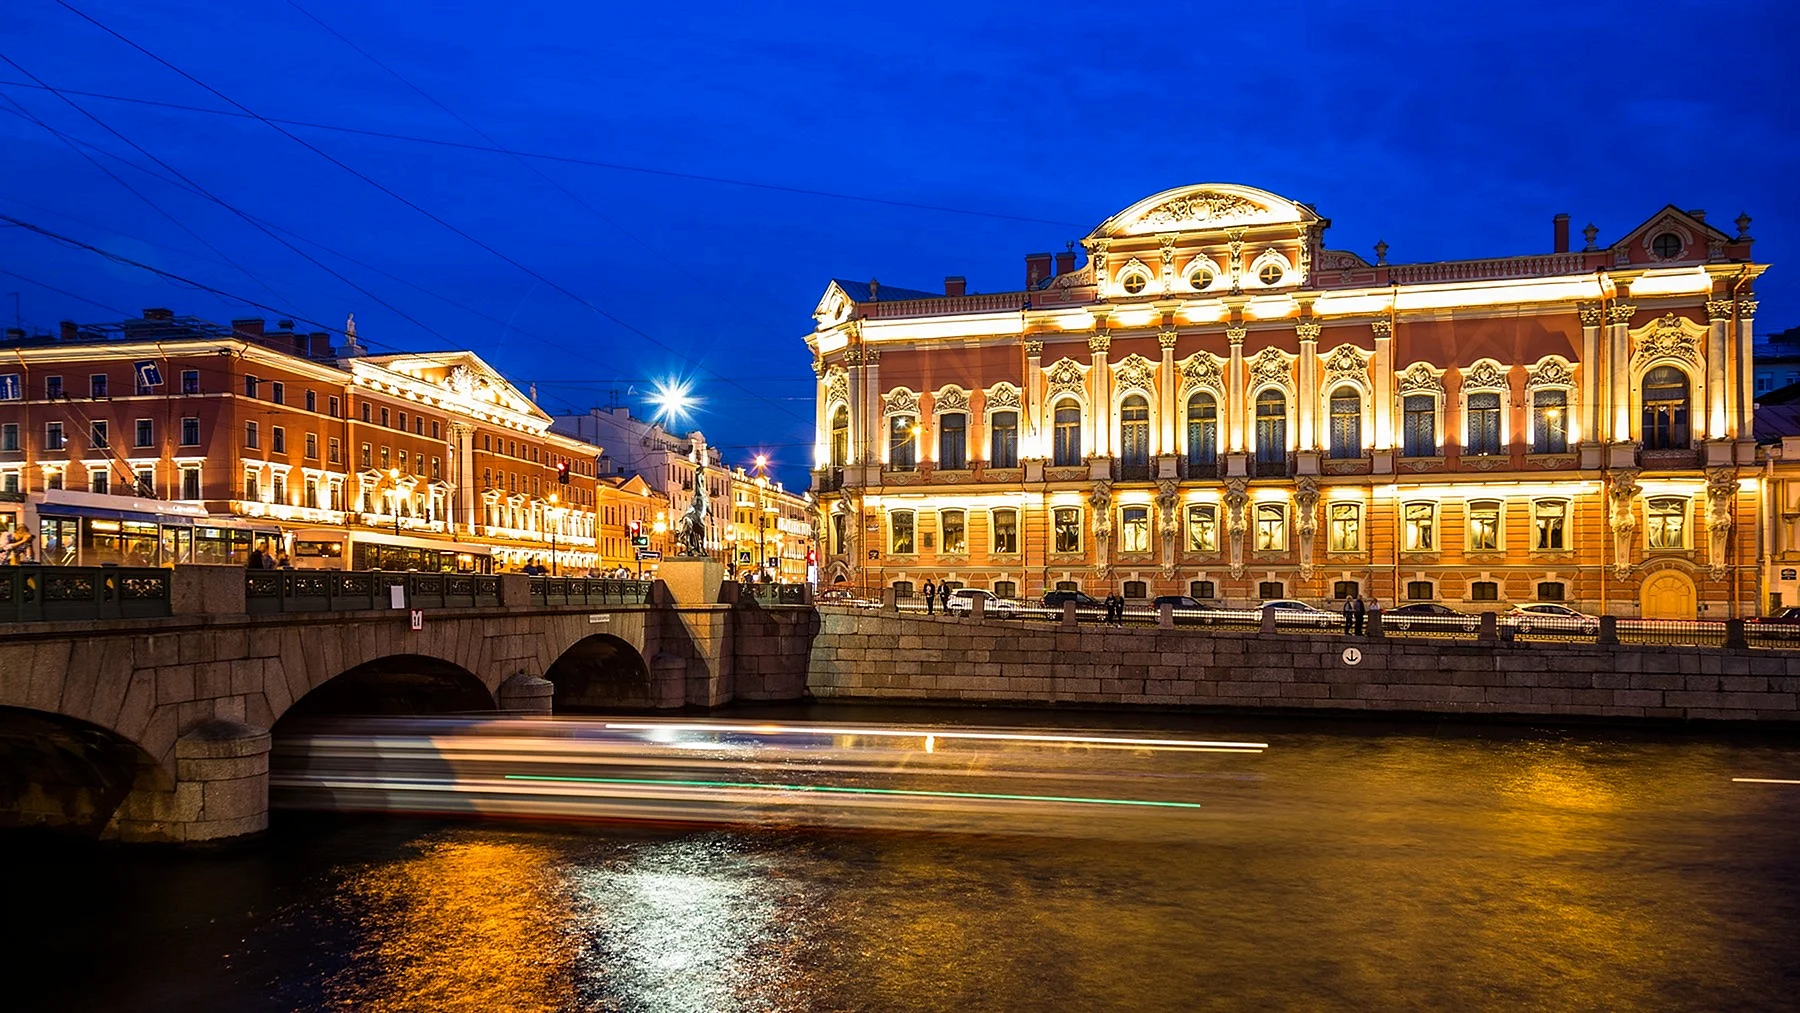 Аничков дворец и мост в Санкт-Петербурге